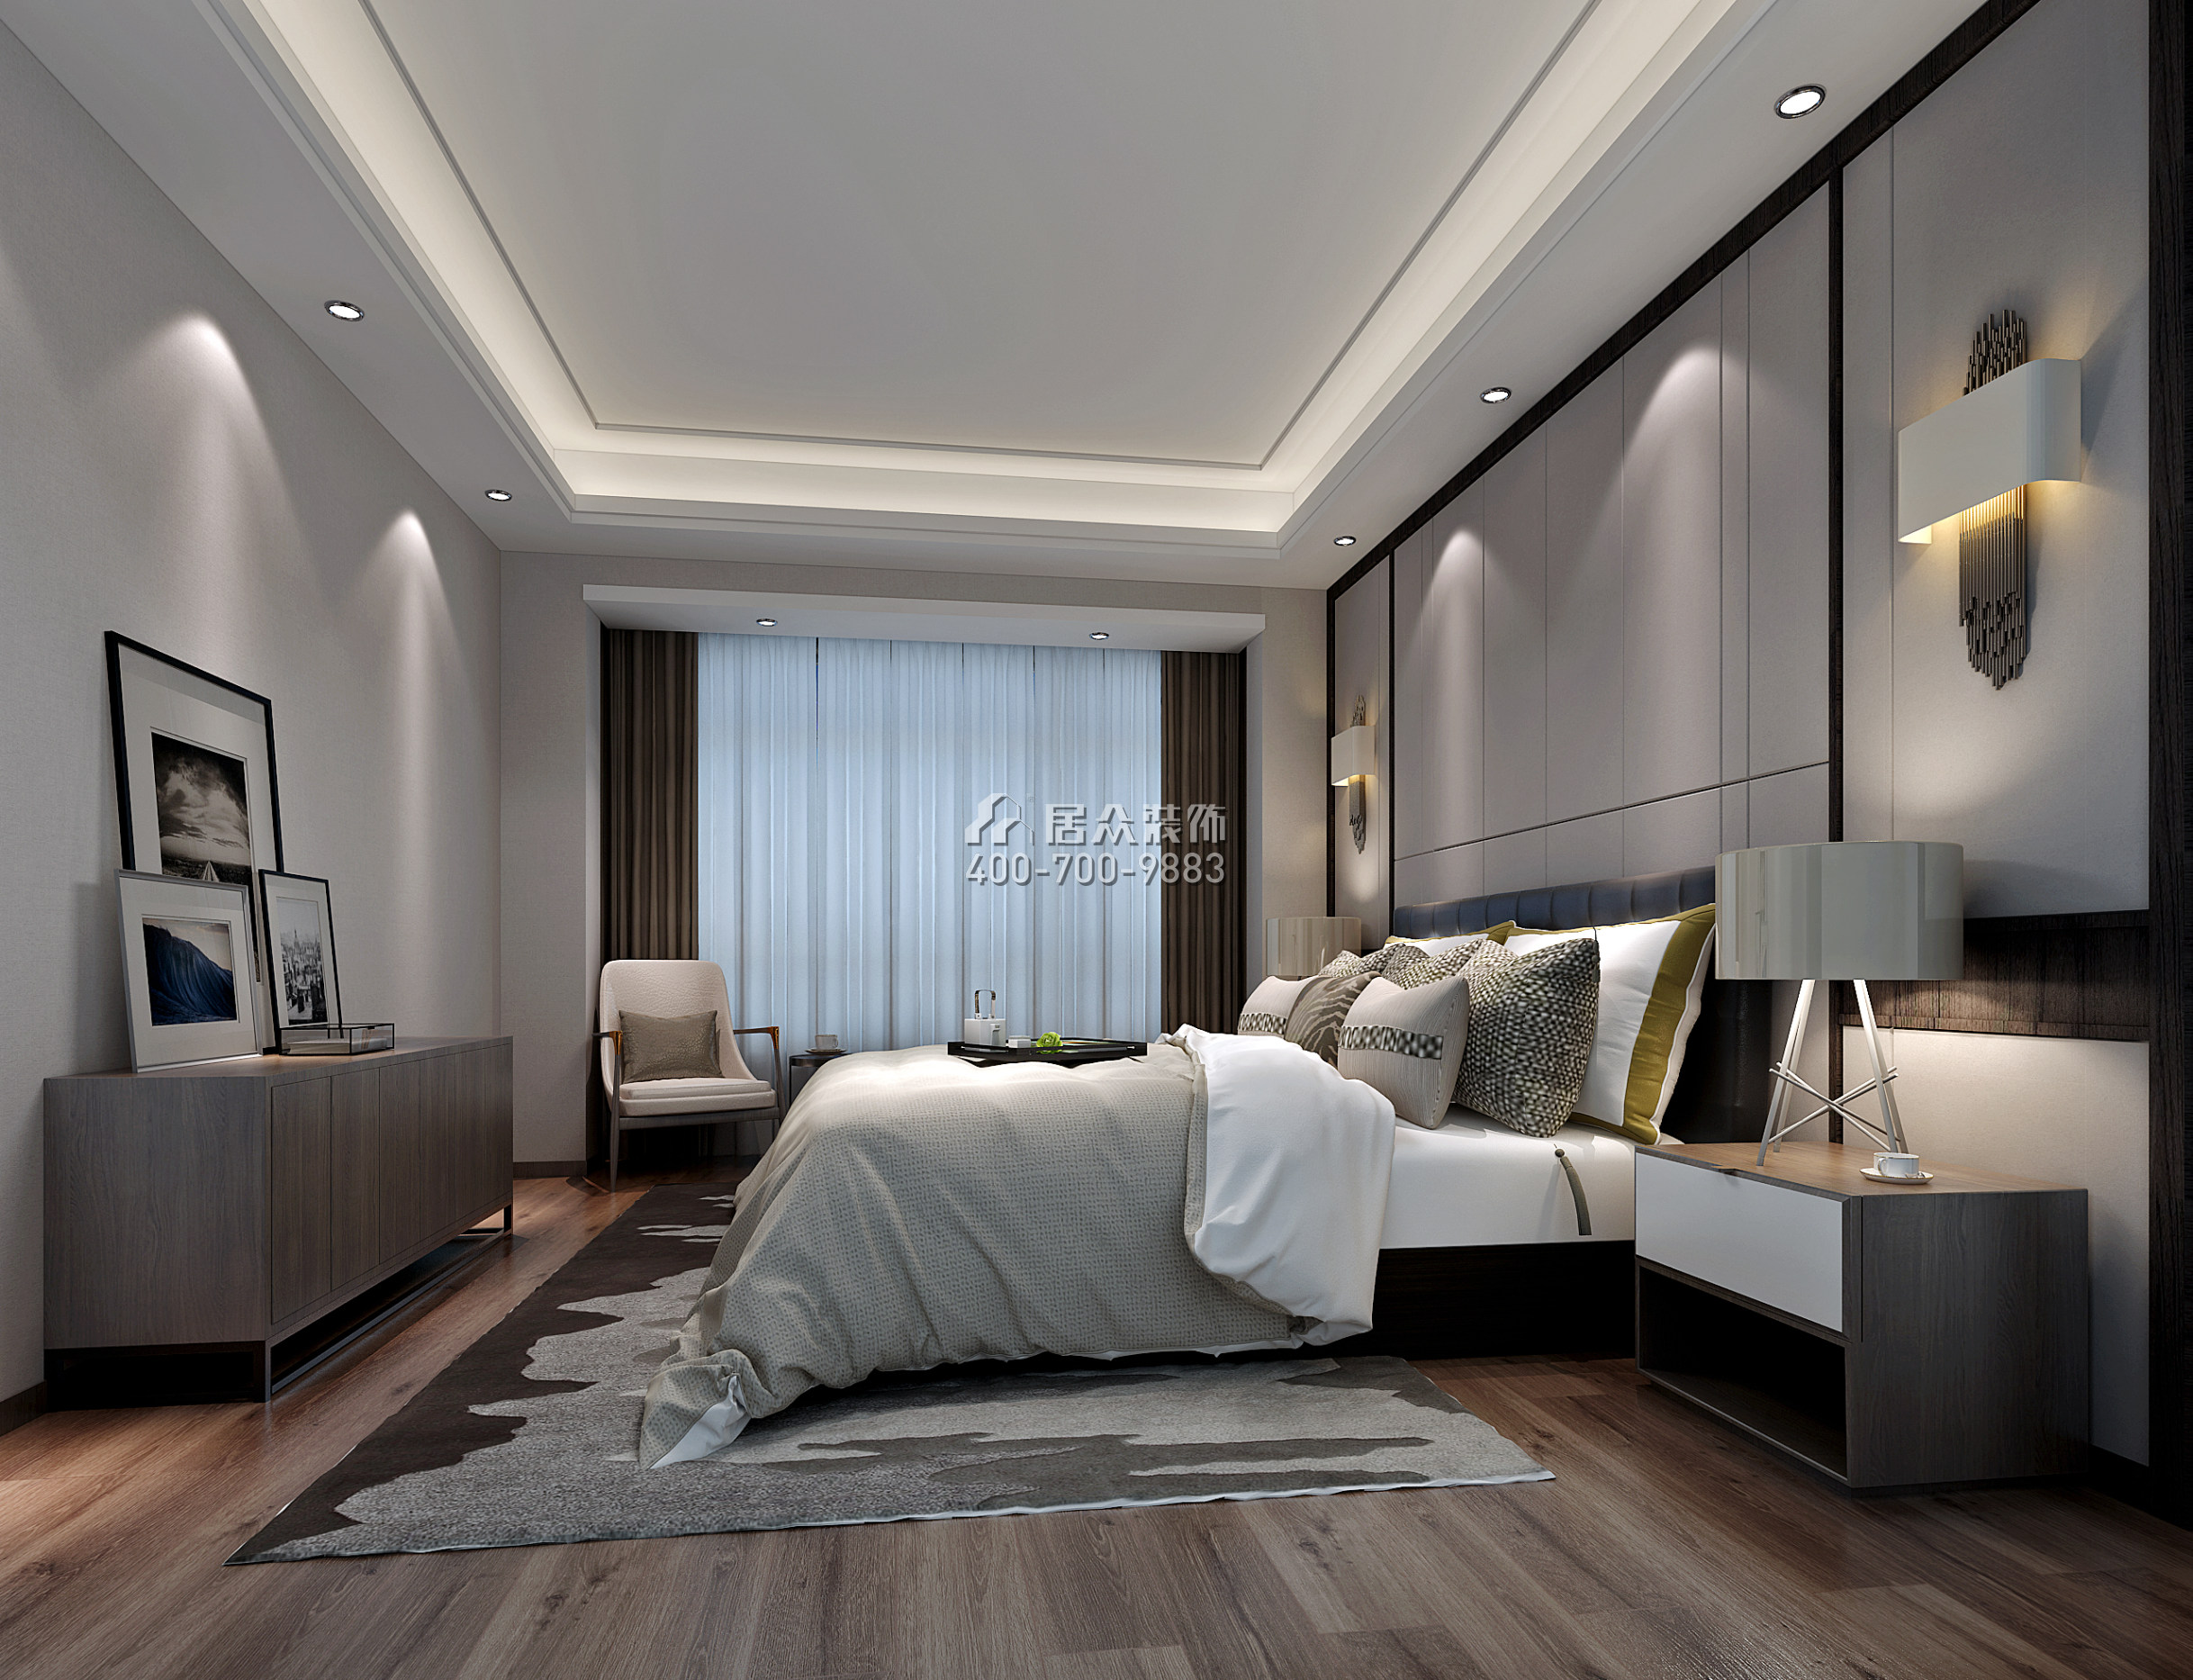 隆生文岭西堤140平方米现代简约风格平层户型卧室装修效果图